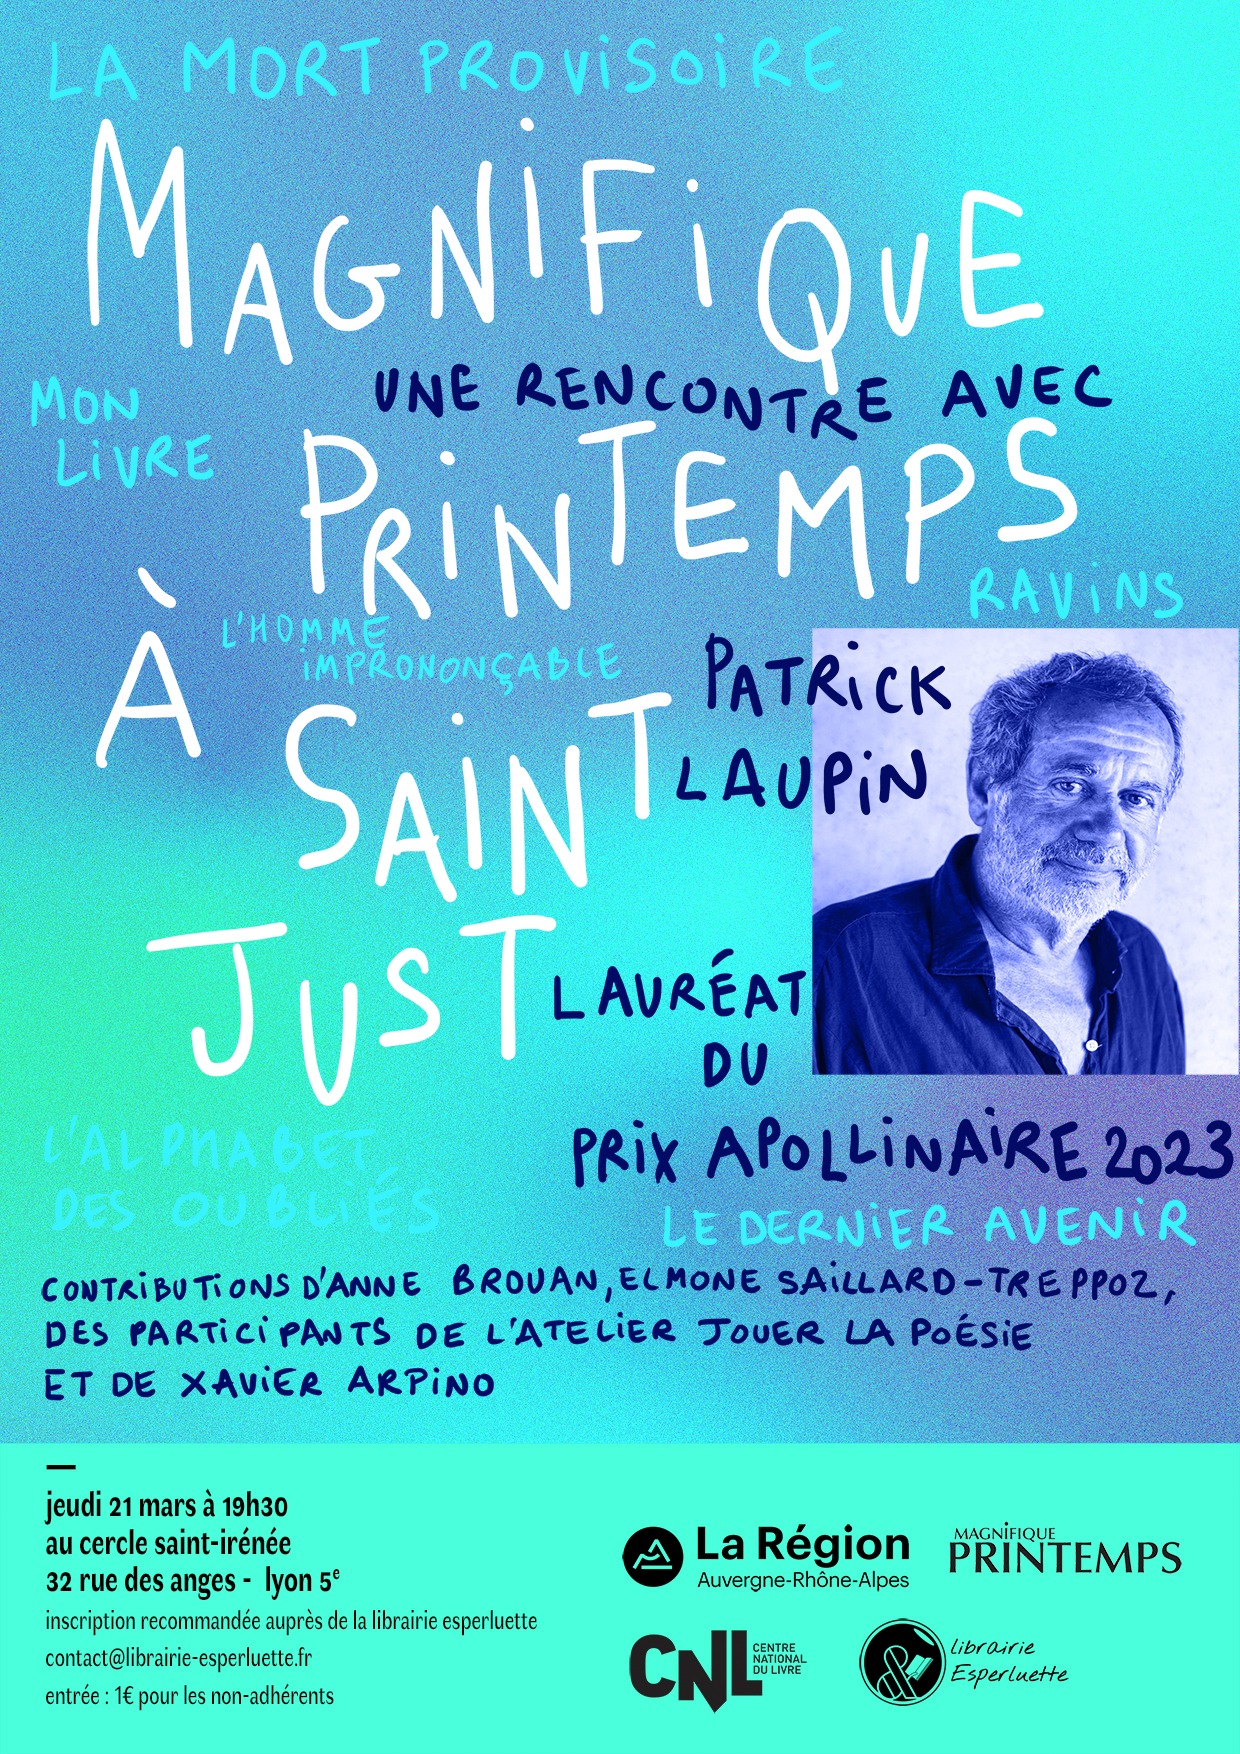 You are currently viewing Magnifique Printemps à Saint Just : rencontre avec Patrick Laupin